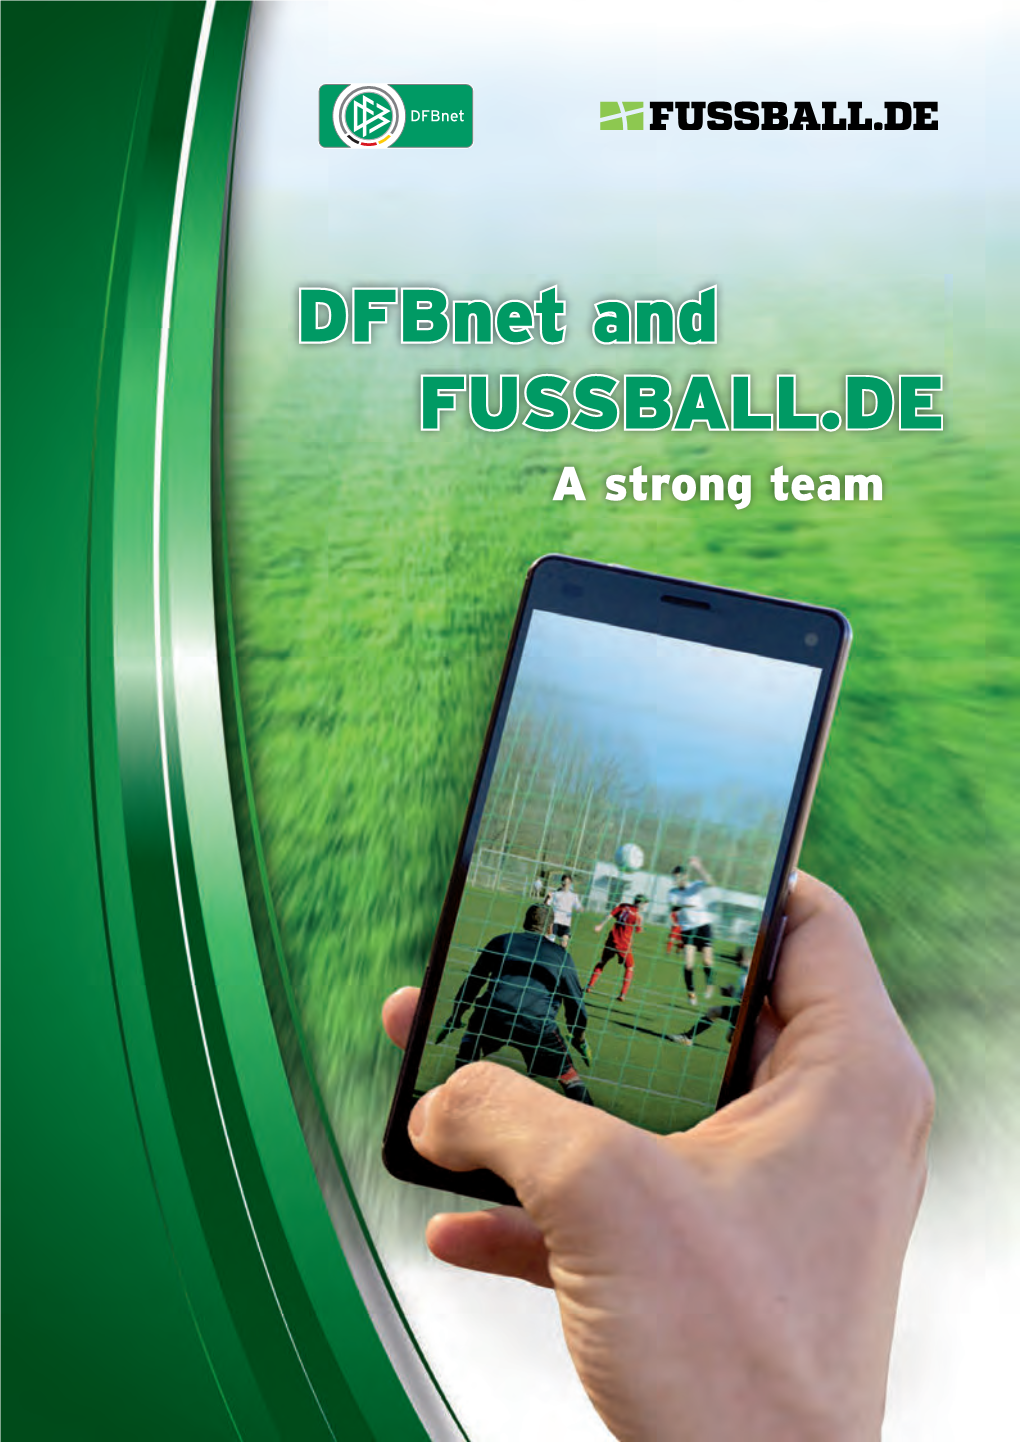 Dfbnet and FUSSBALL.DE